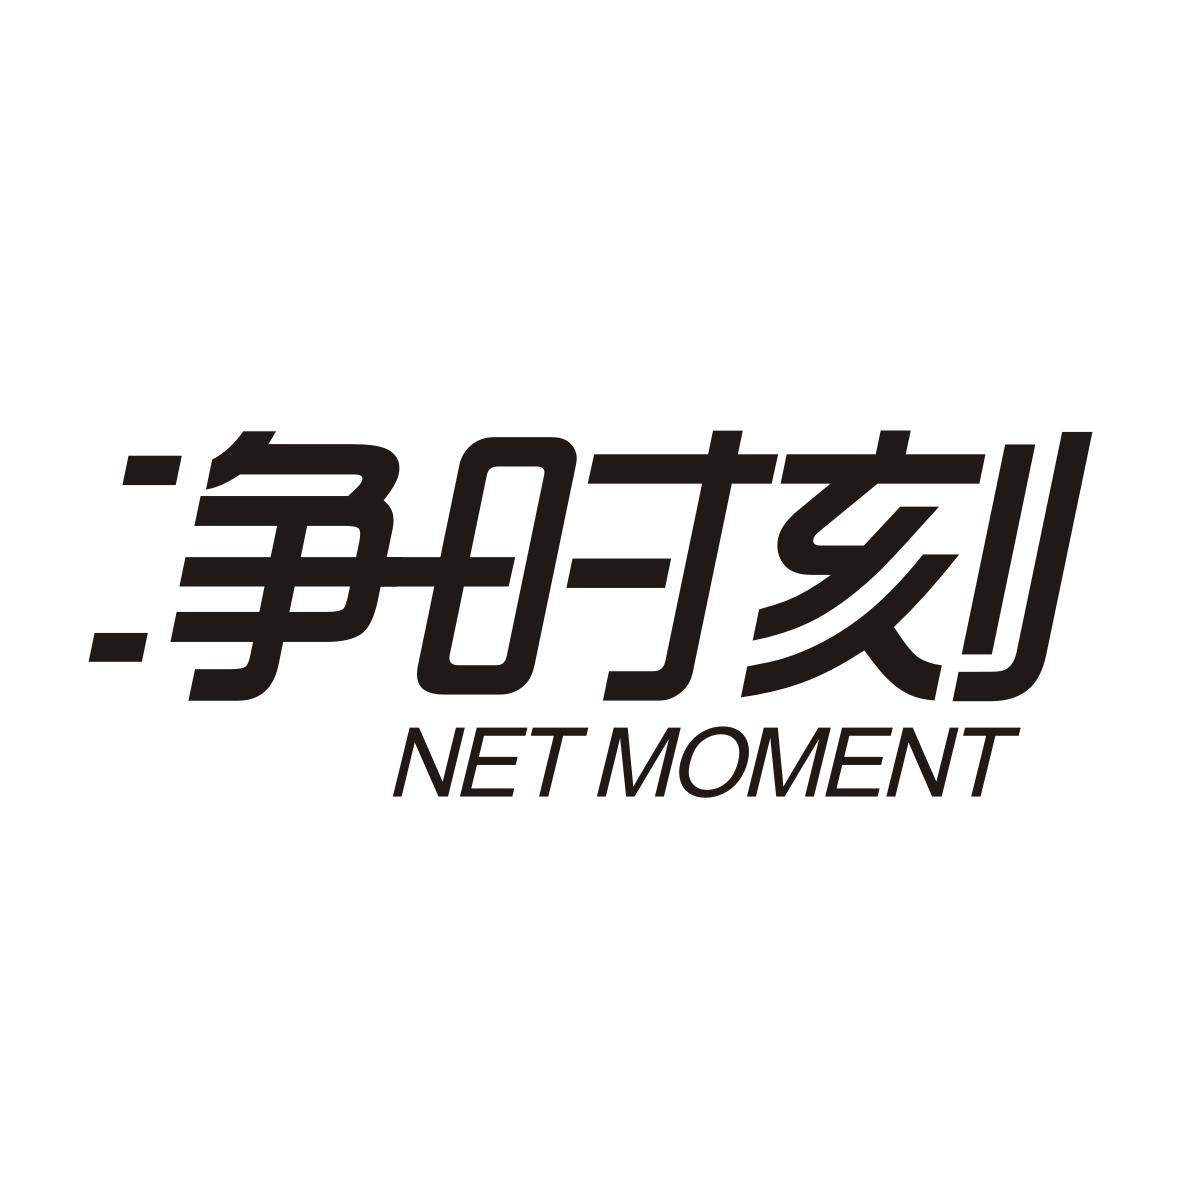 v-17089 净时刻 NET MOMENT